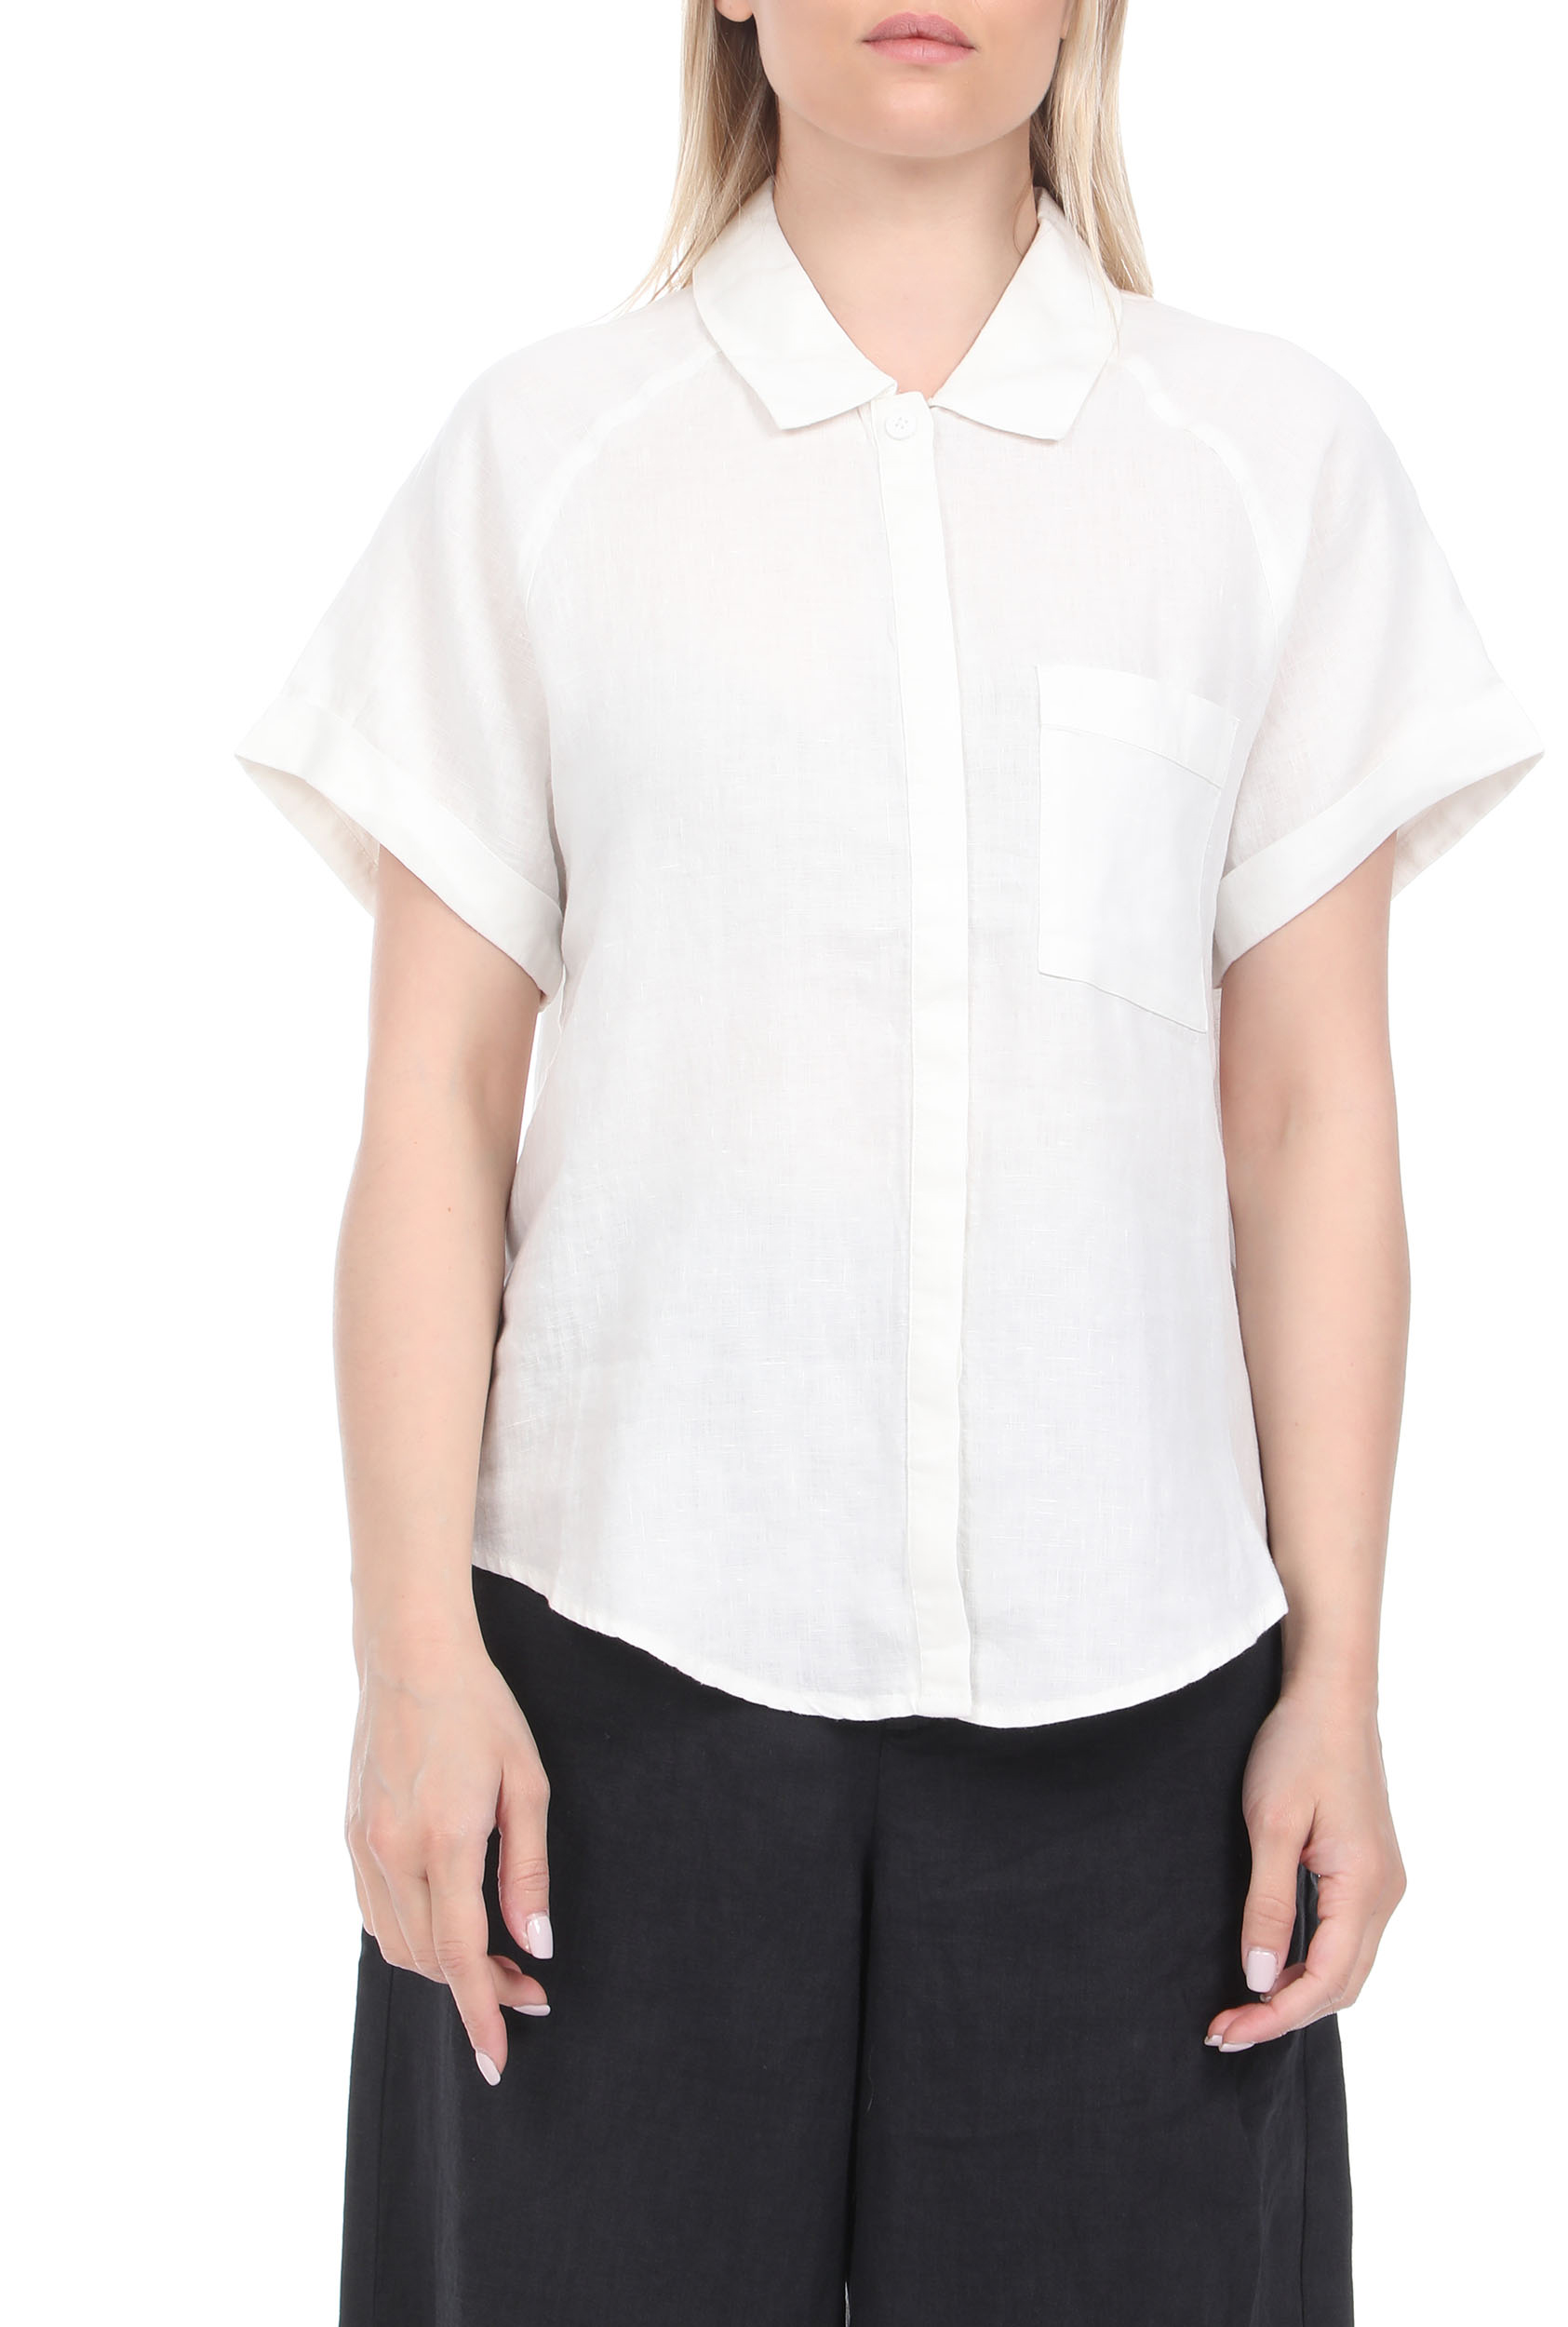 Γυναικεία/Ρούχα/Πουκάμισα/Κοντομάνικα-Αμάνικα ECOALF - Γυναικείο λινό πουκάμισο ECOALF LYCHEE λευκό